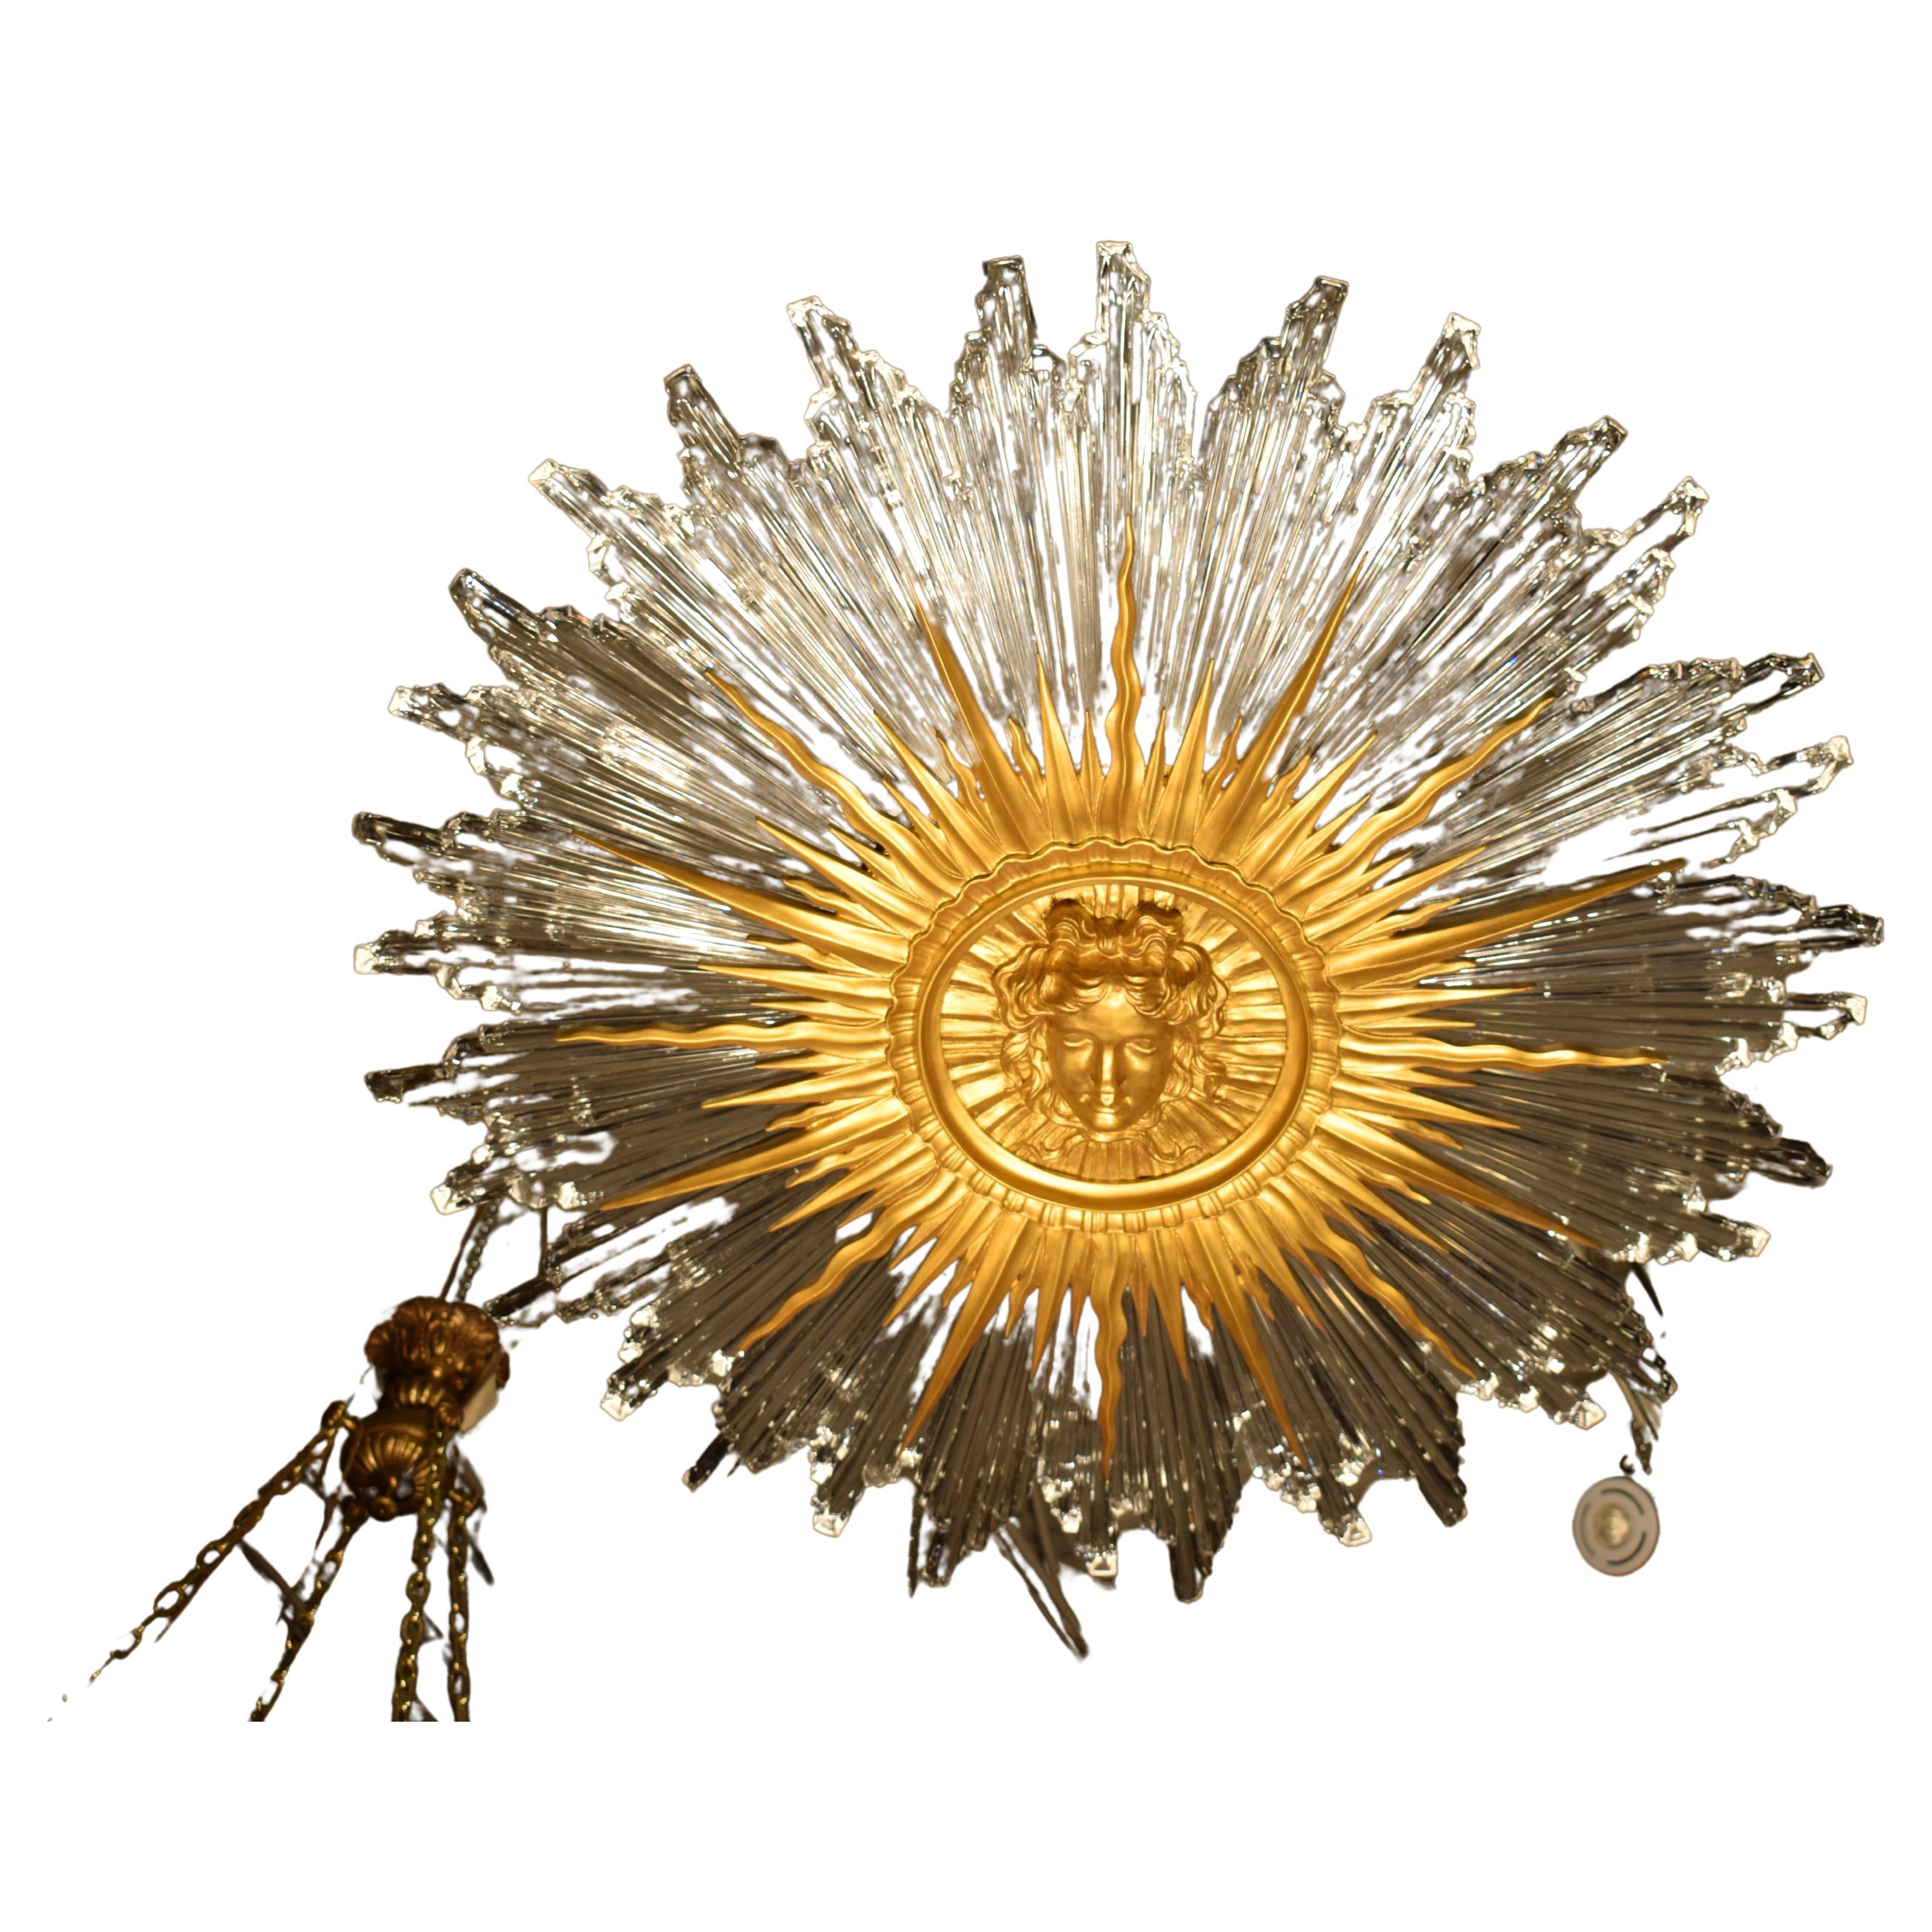 Apollo-Anhänger, Ein prächtiger Anhänger, der den Kopf von Apollo, dem Sonnengott, darstellt, umgeben von 32 Kristallstrahlen. 8 Lichter.
Louis XV Stil. Europa, Modern. 
Abmessungen: Höhe 10